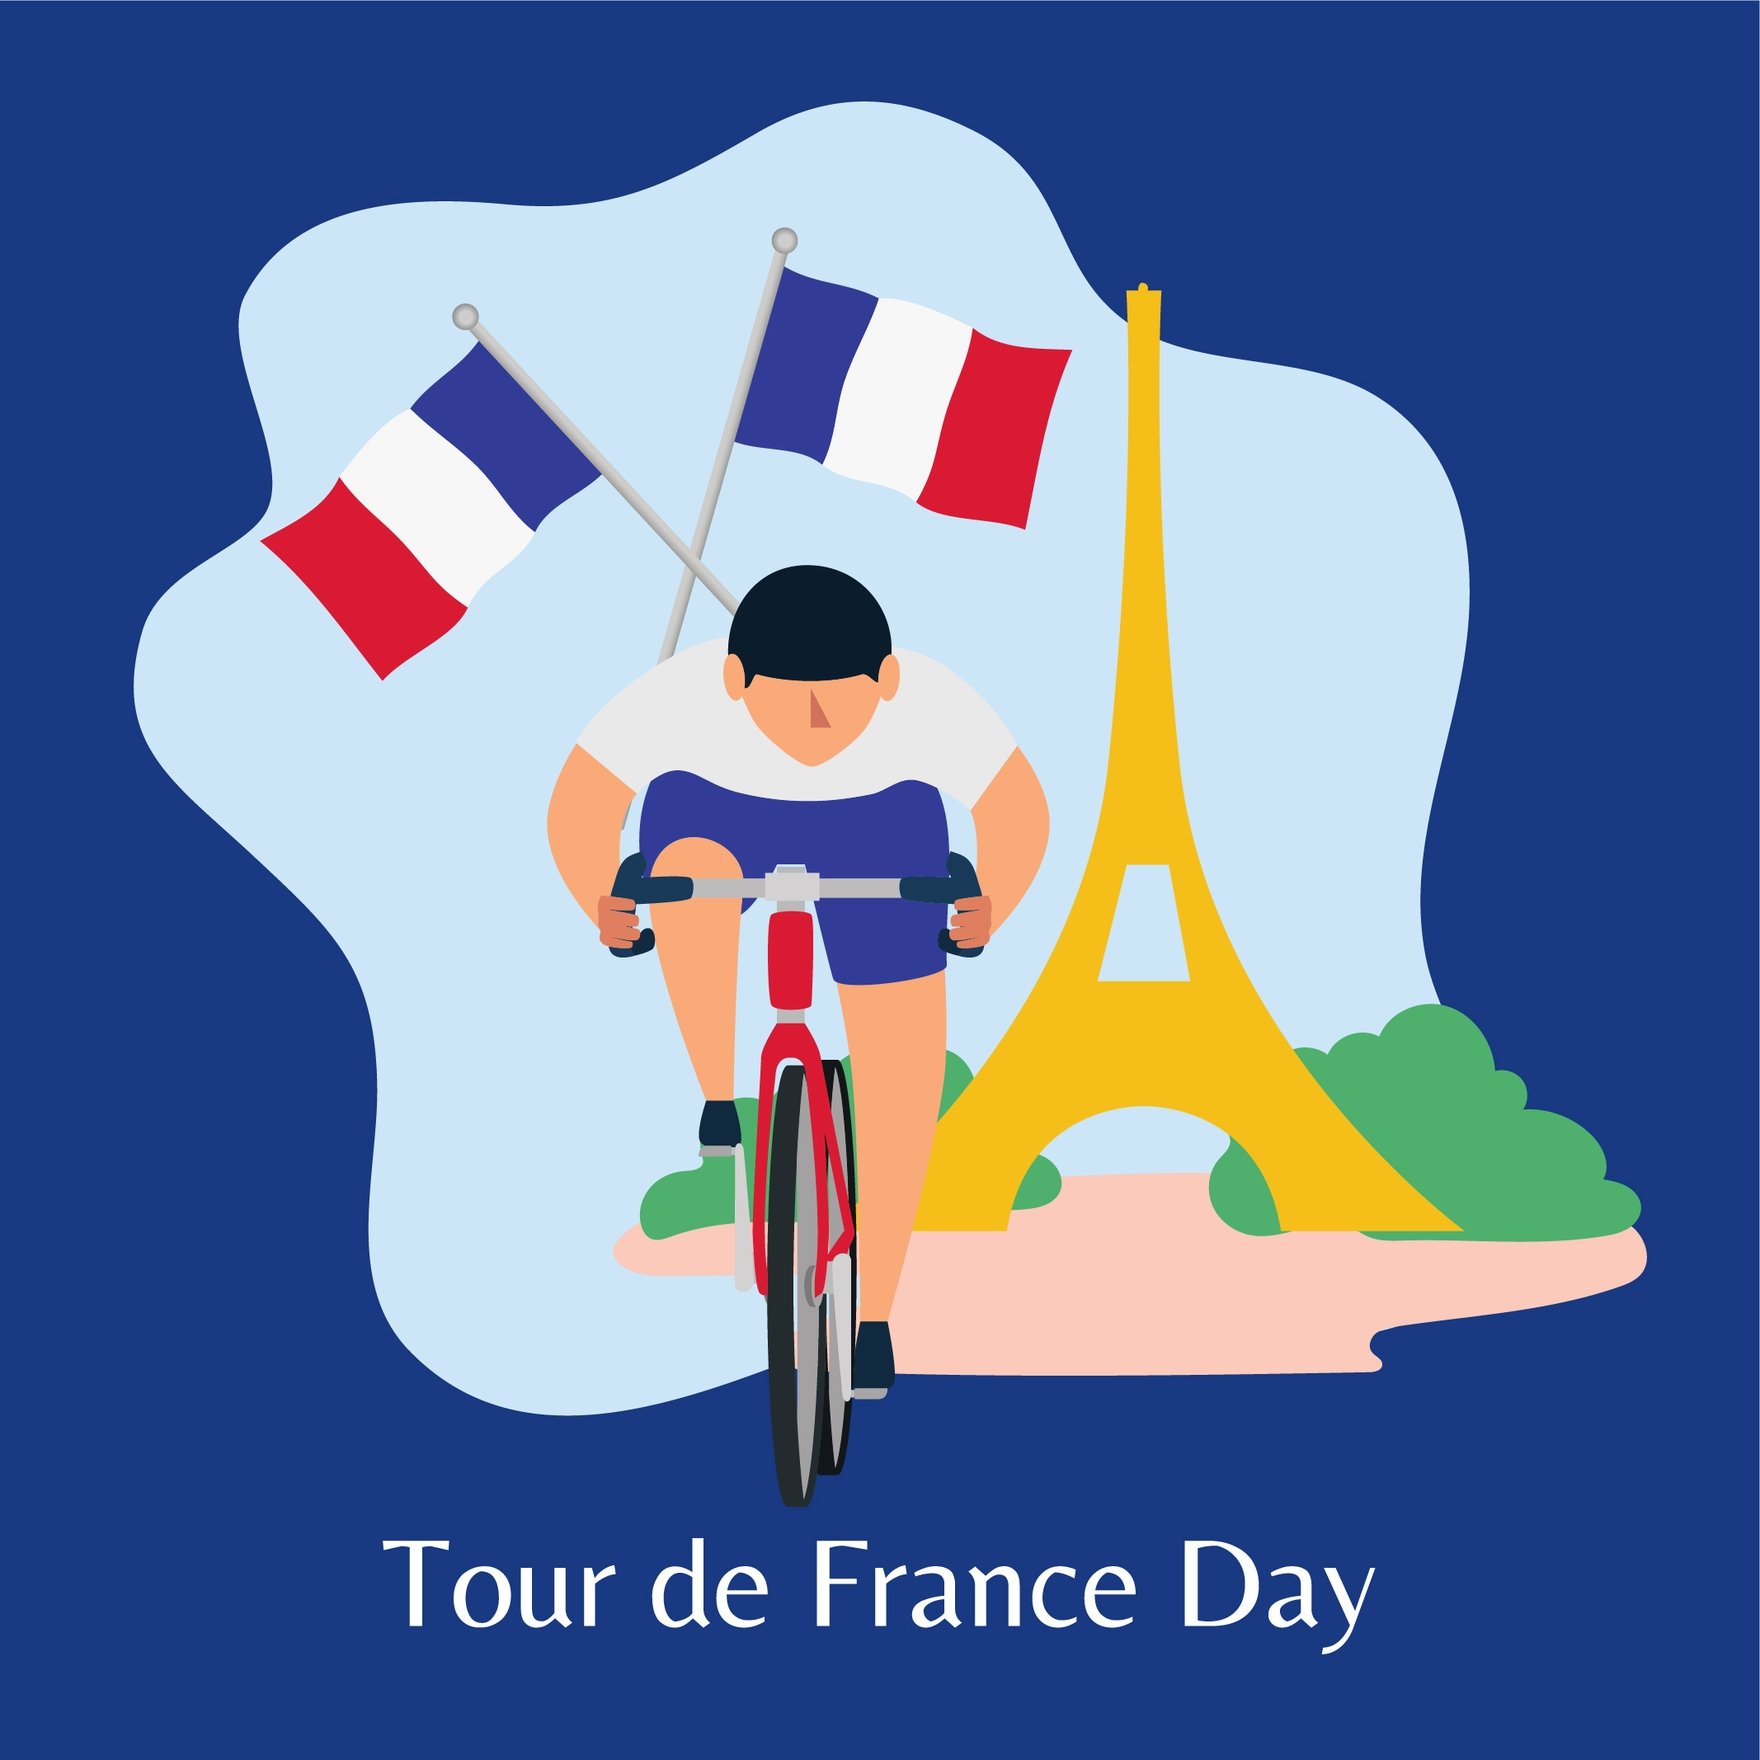 Tour de France Celebration Vector in Illustrator, PSD, EPS, SVG, JPG, PNG